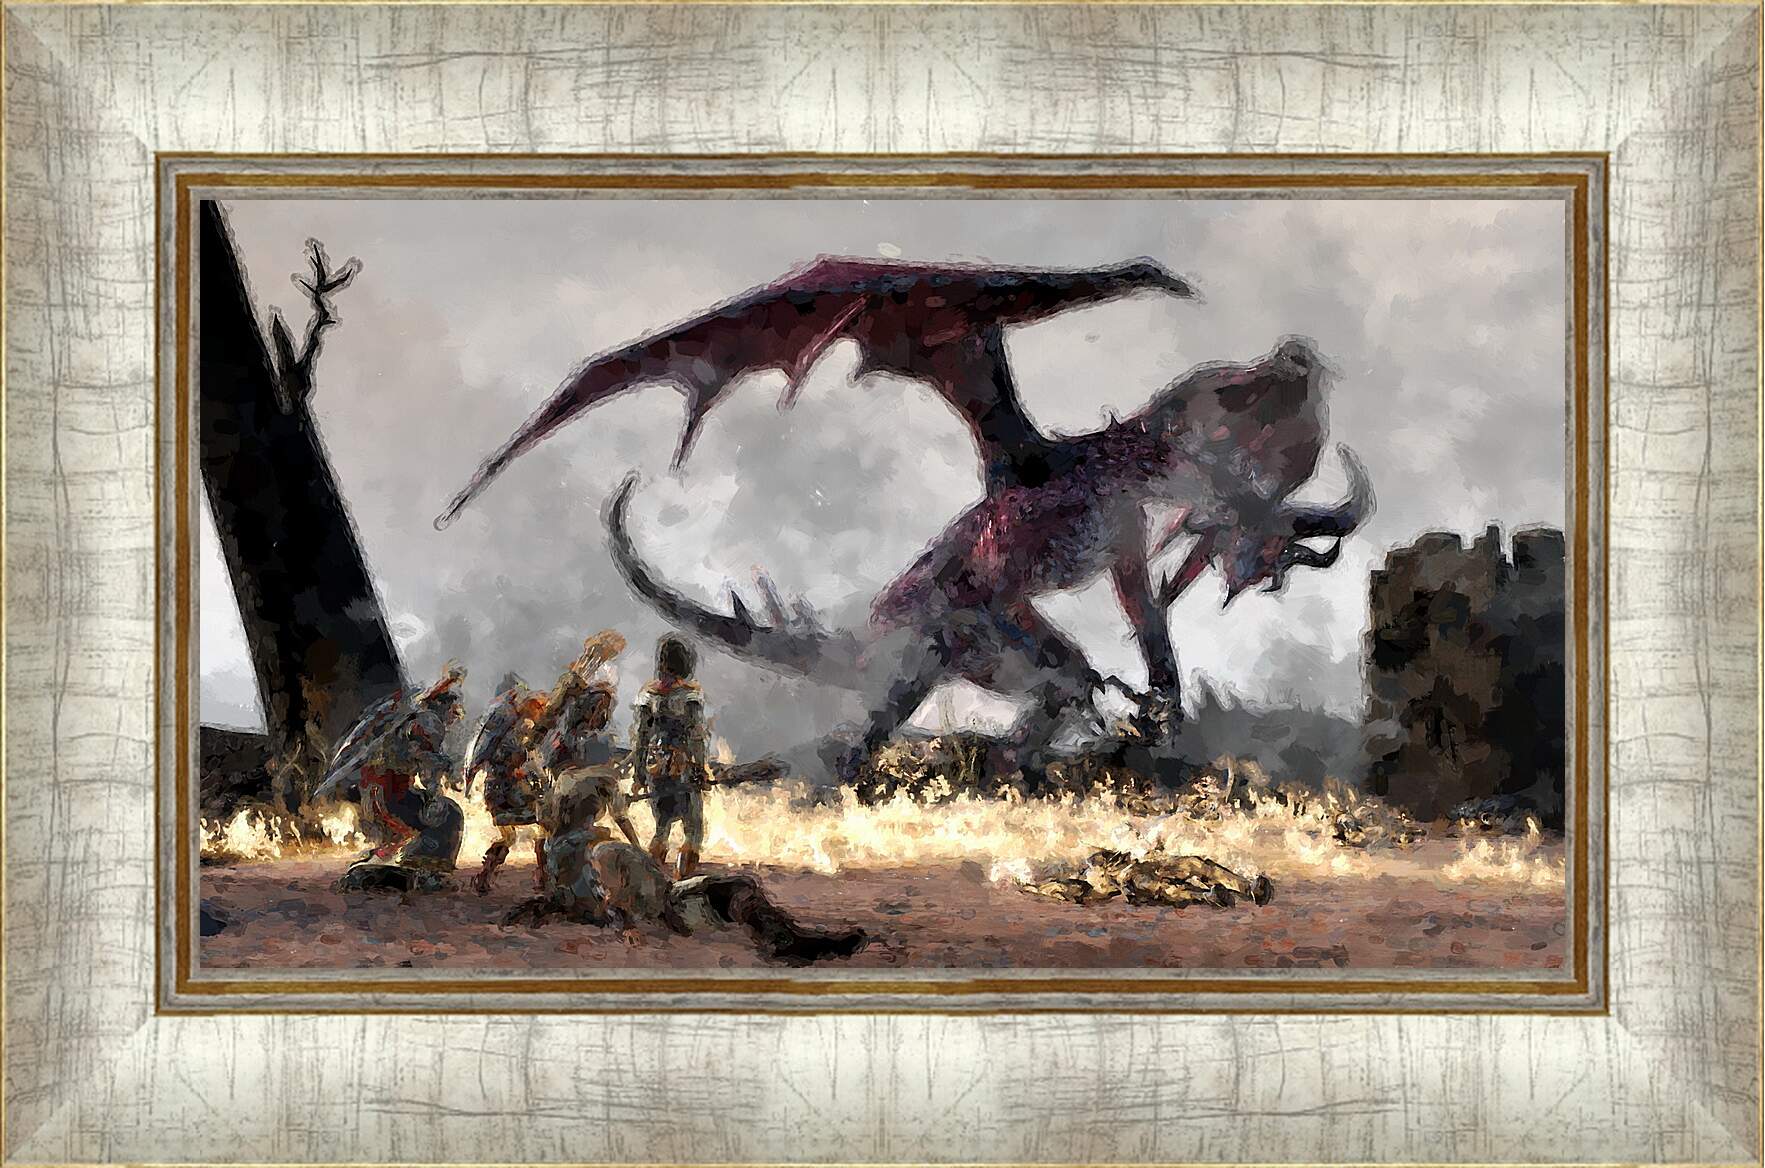 Картина в раме - Dragon Age II
